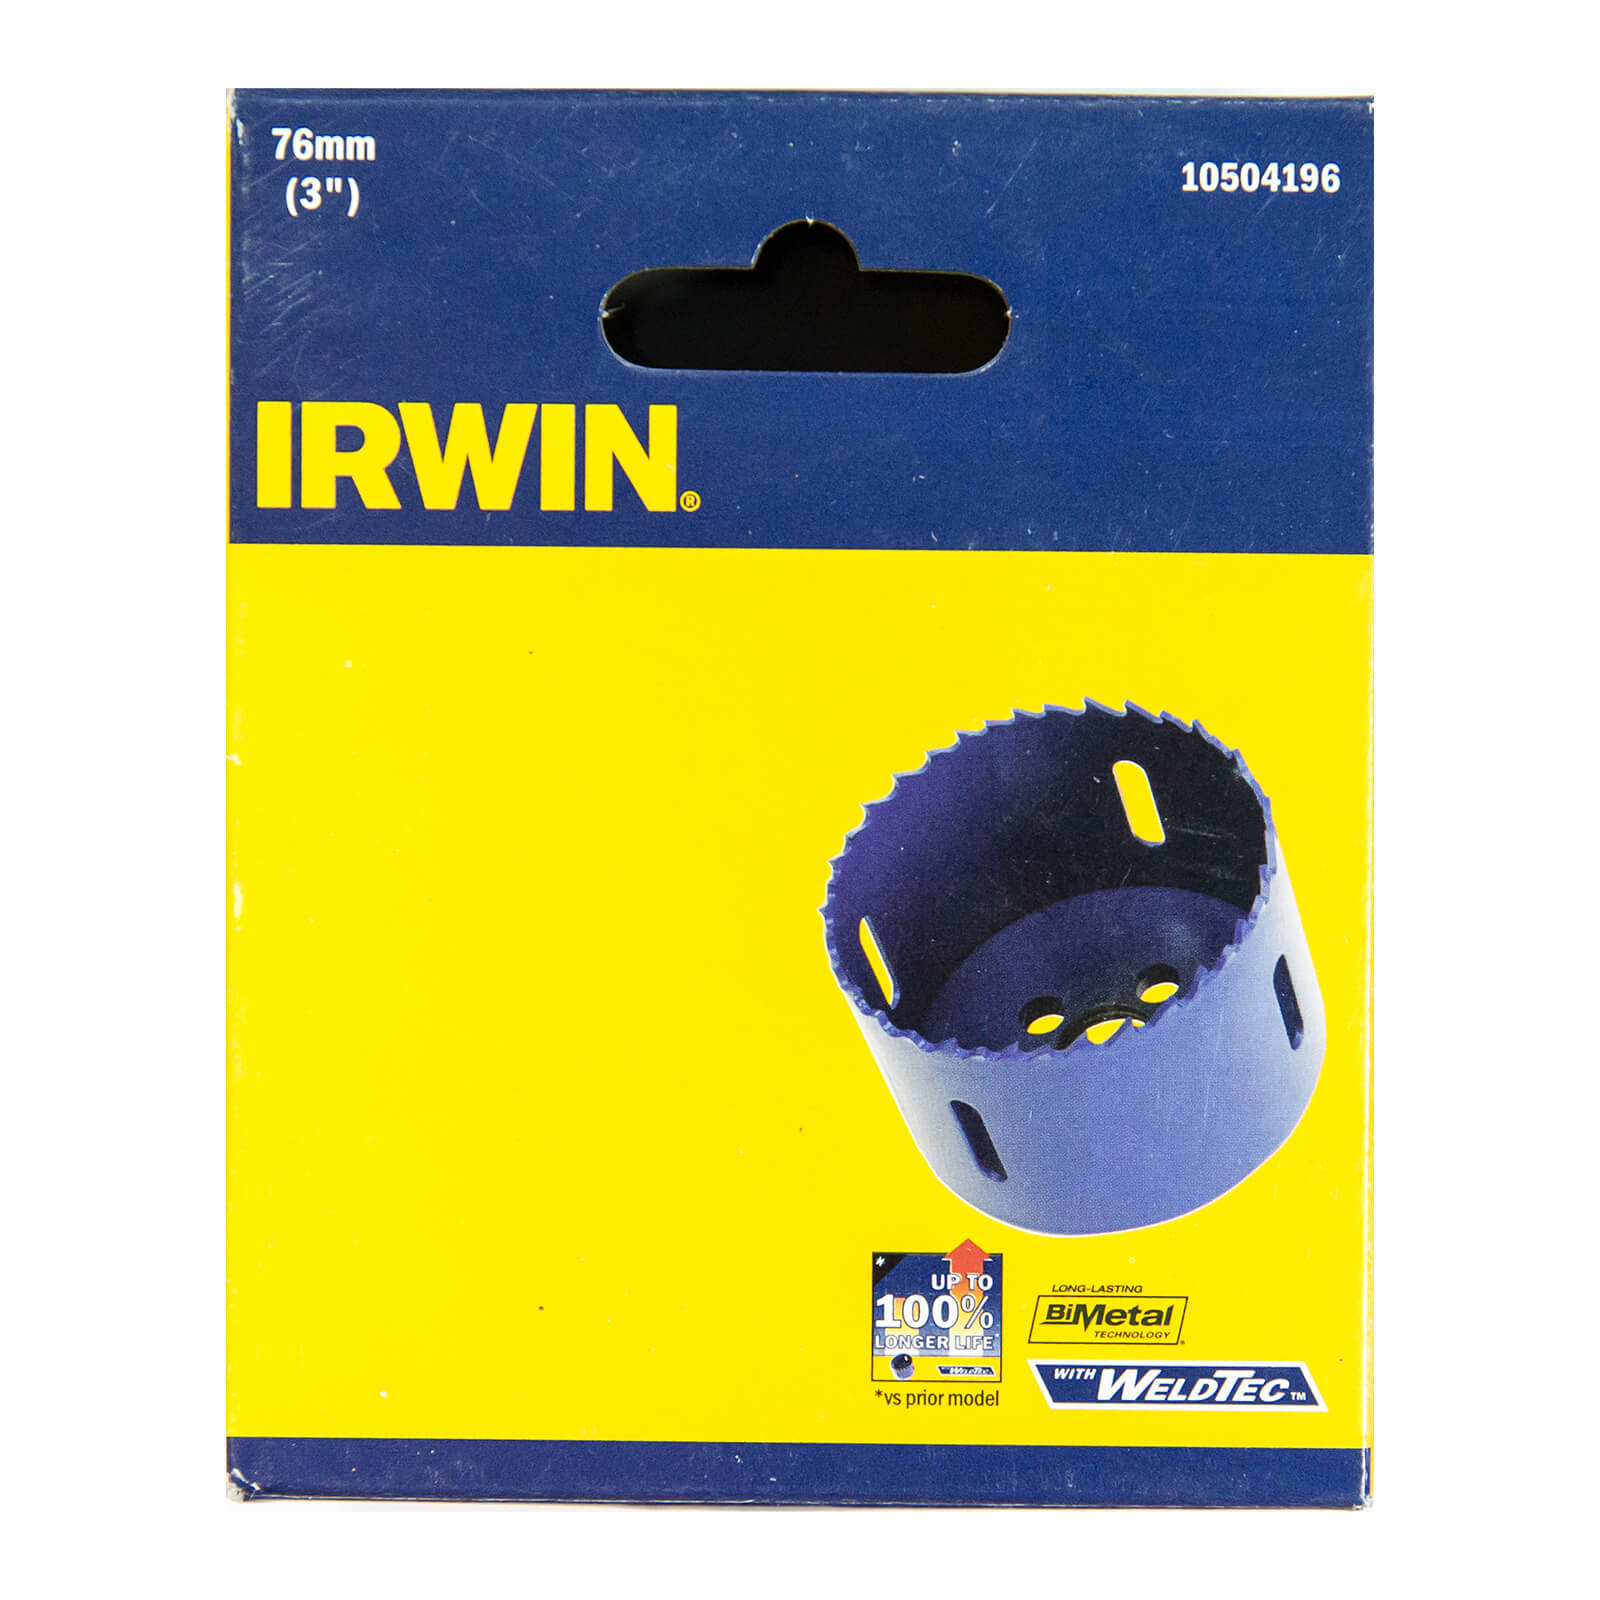 IRWIN Bi-Metal Hole Saw - 76mm